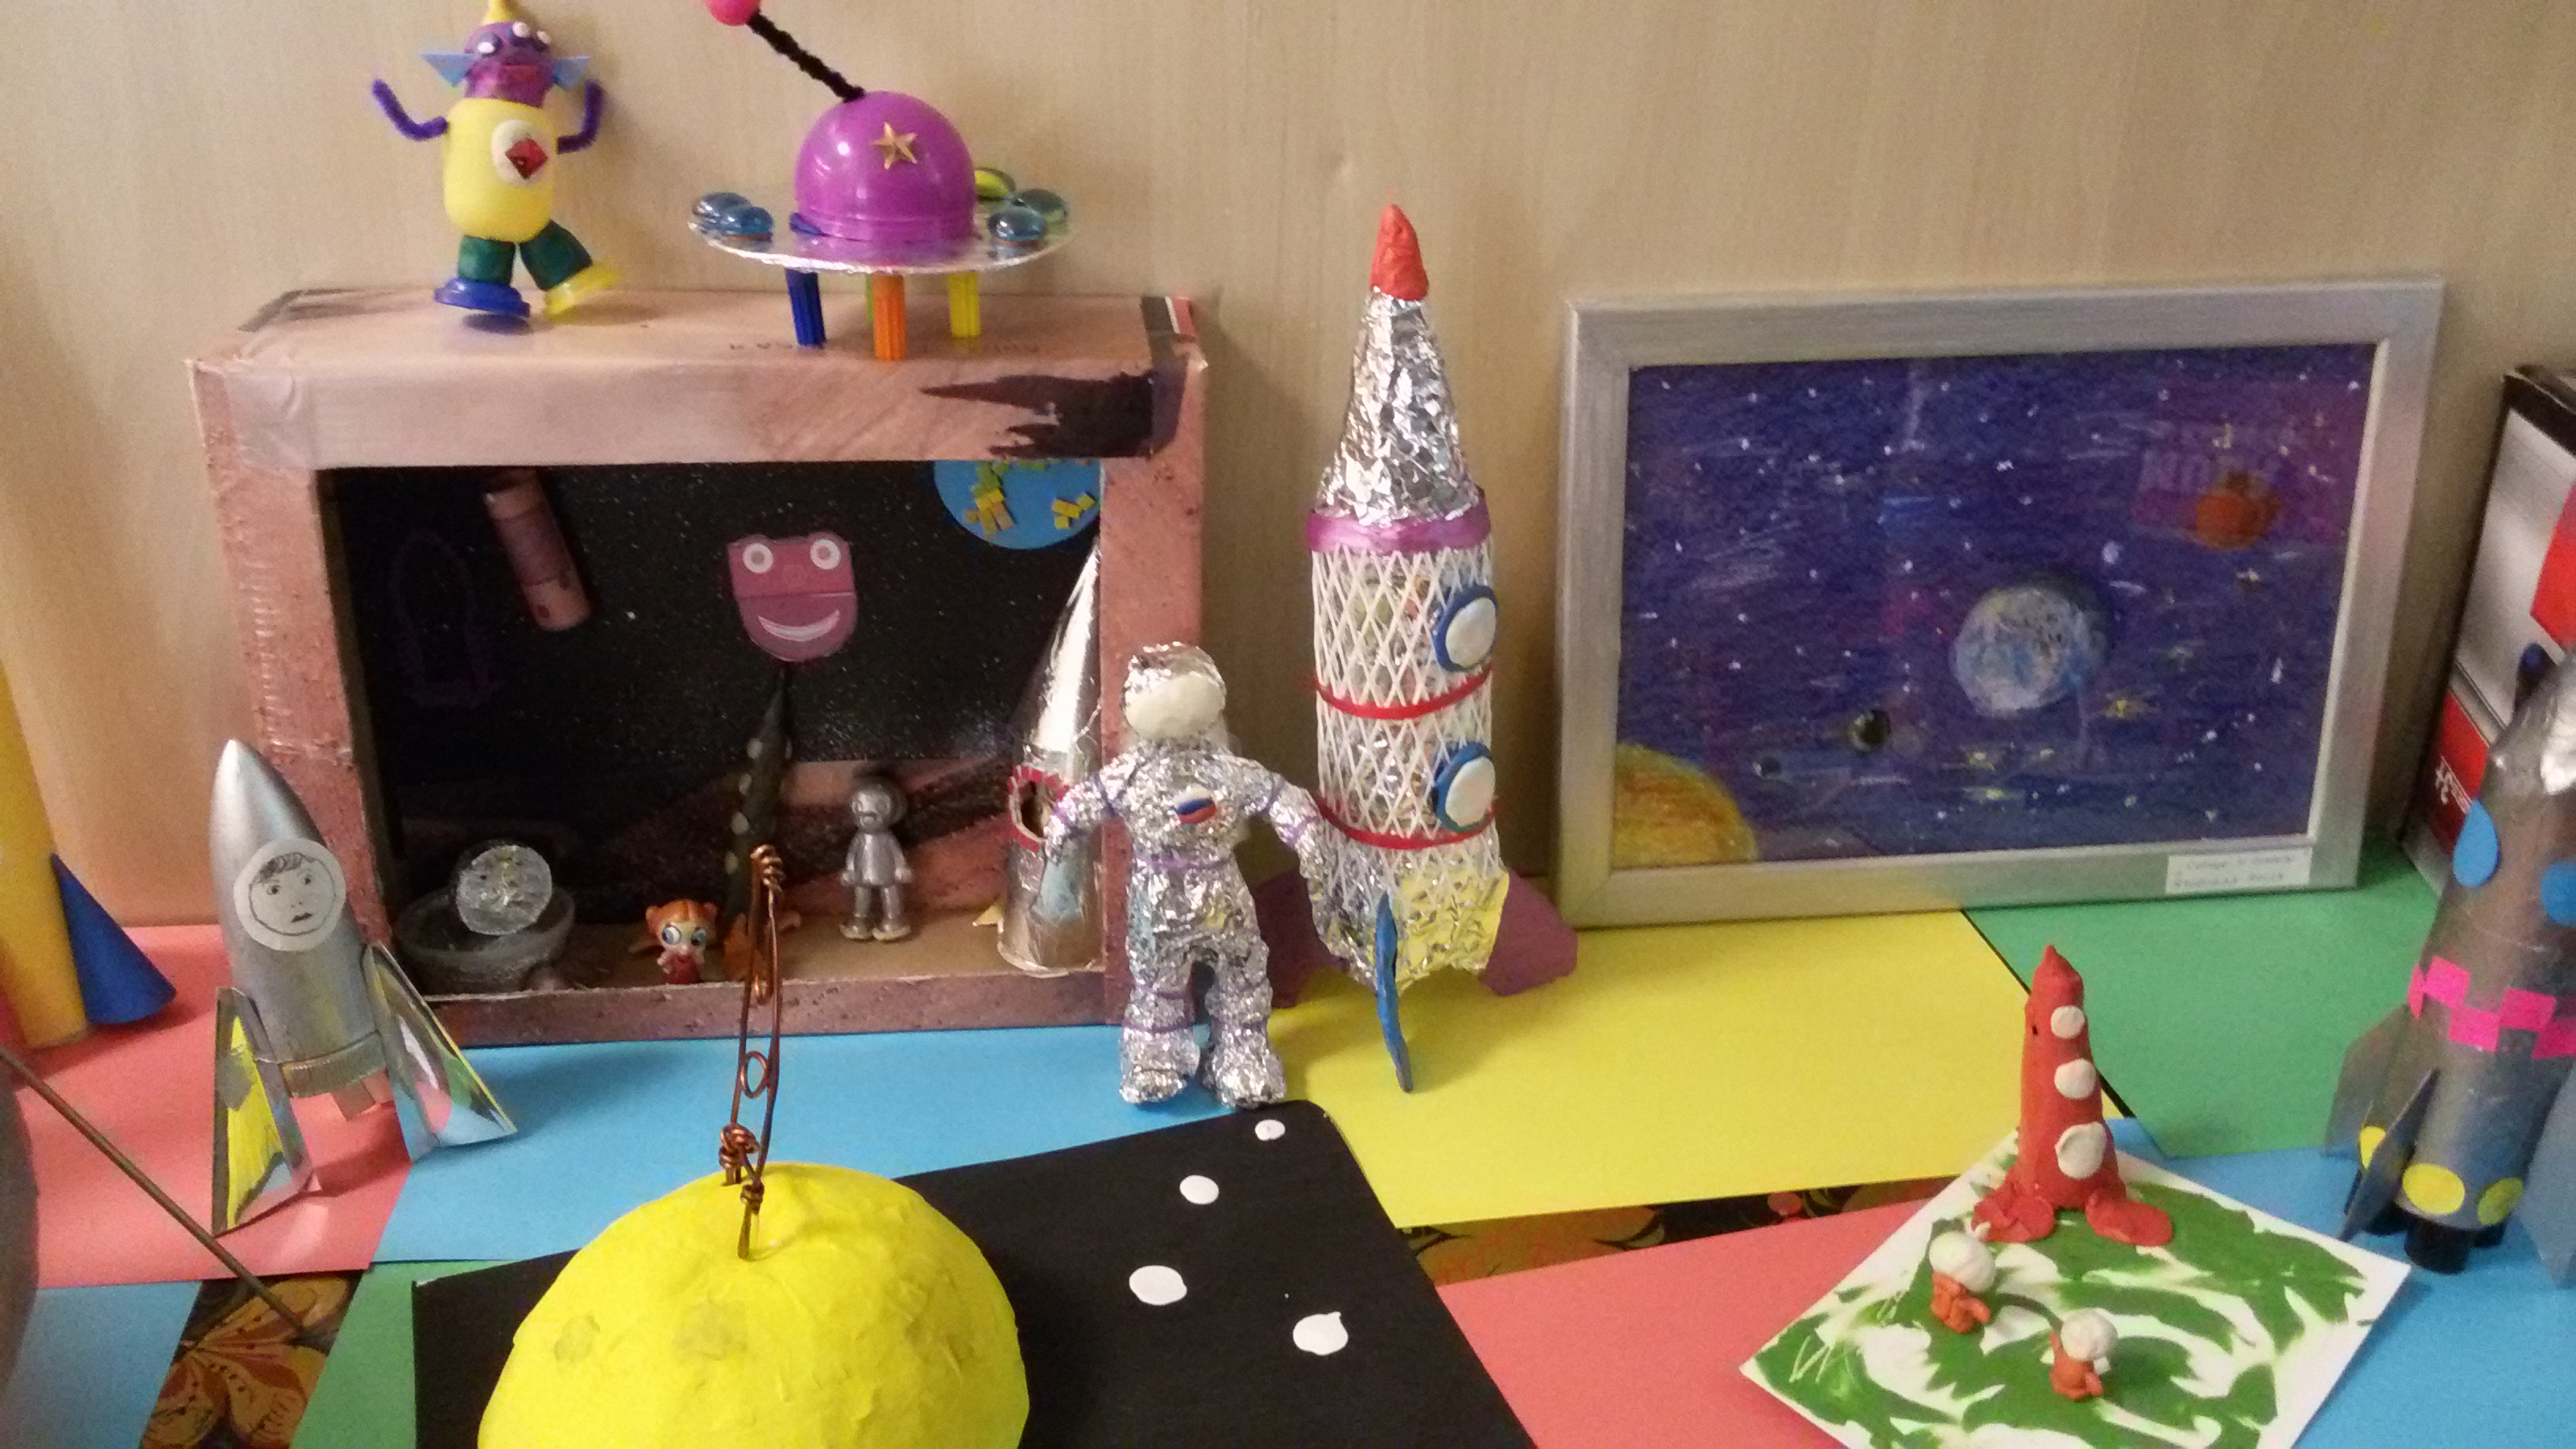 Конкурс в детском саду Космические дали Творческая мастерская